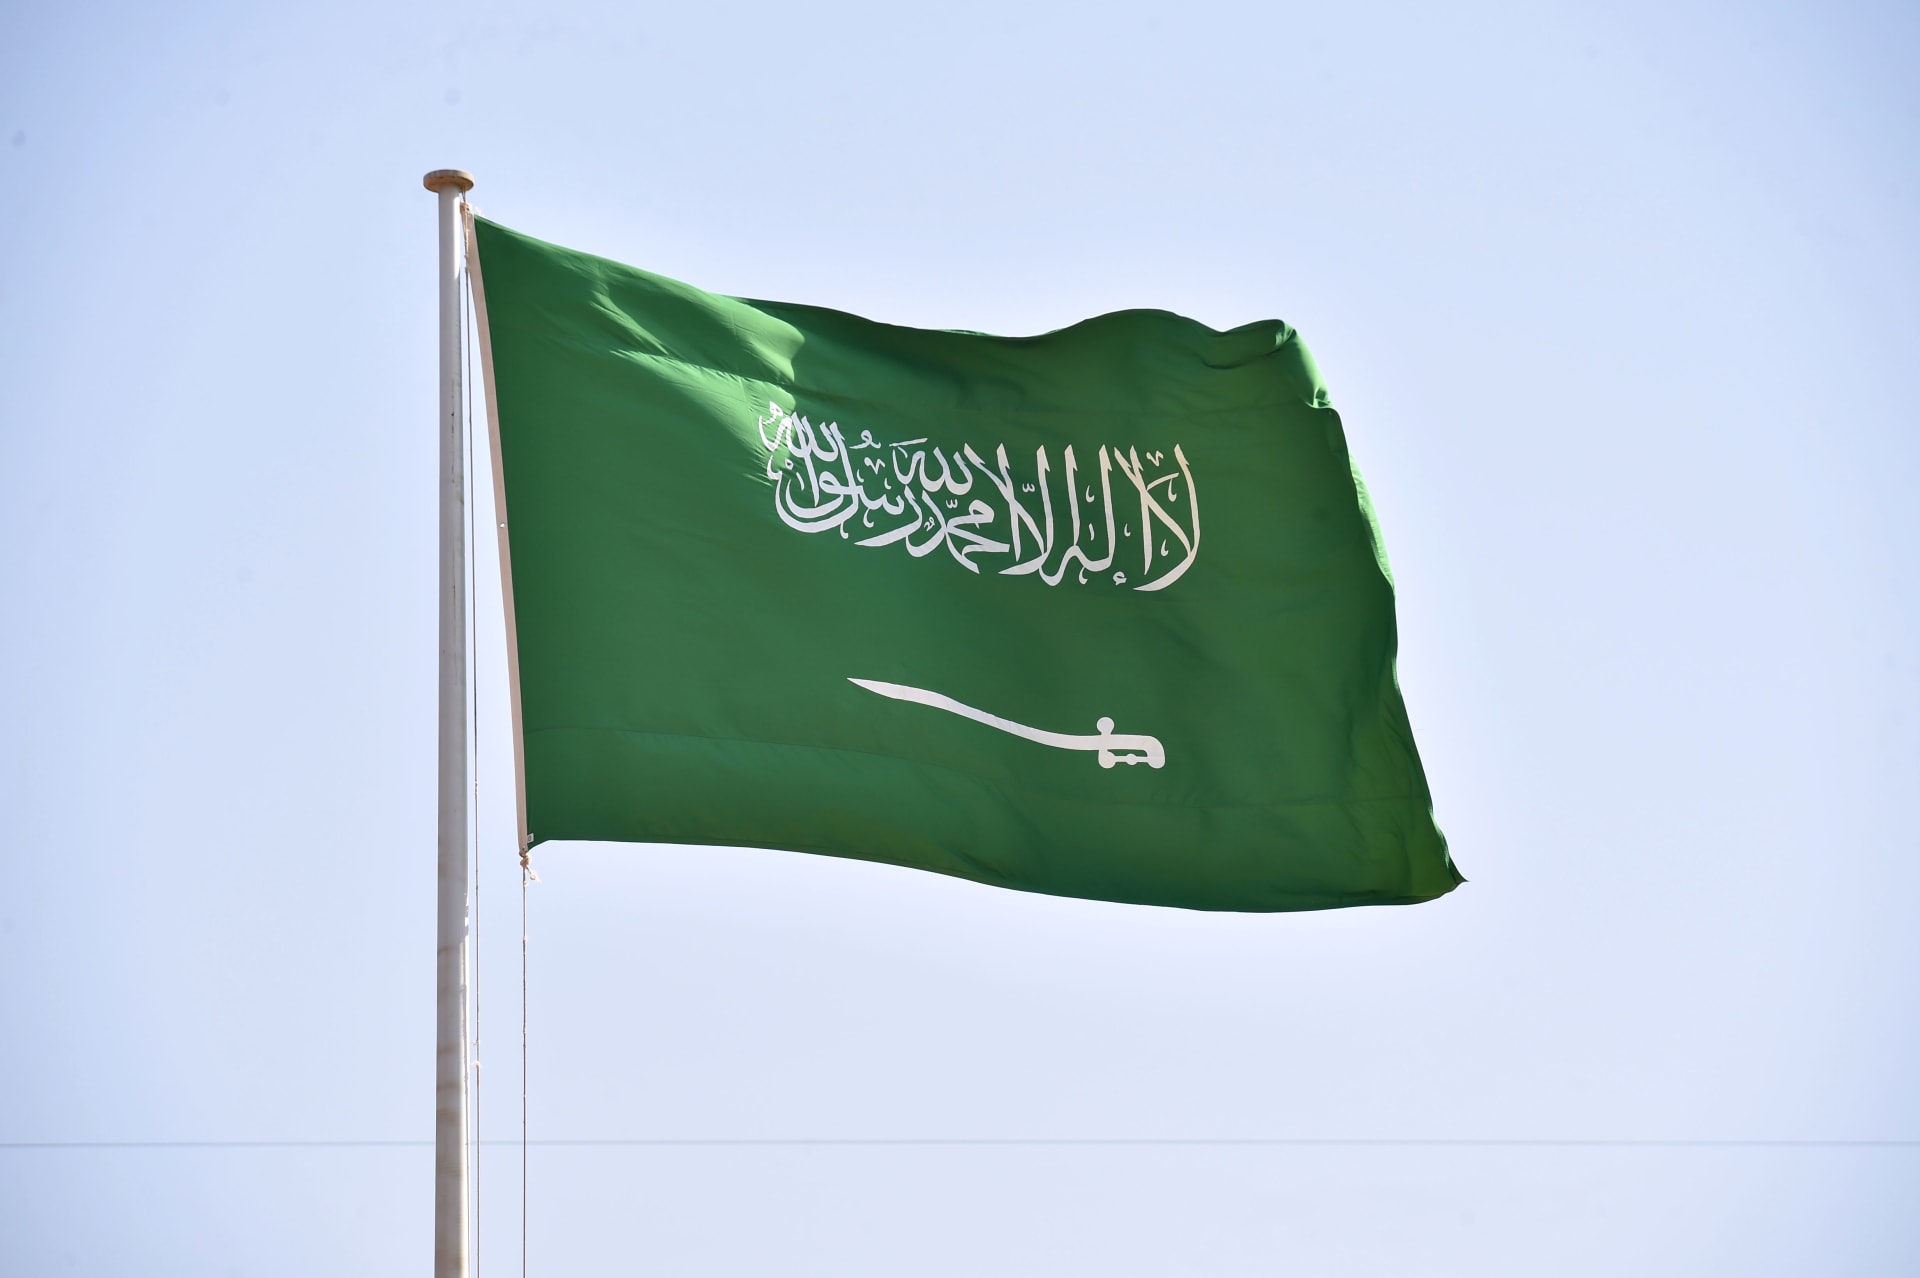 السعودية للكهرباء تعلن عن رقم مجاني للتواصل وتجيب عن إمكانية قطع الخدمة مؤقتًا في حين السداد